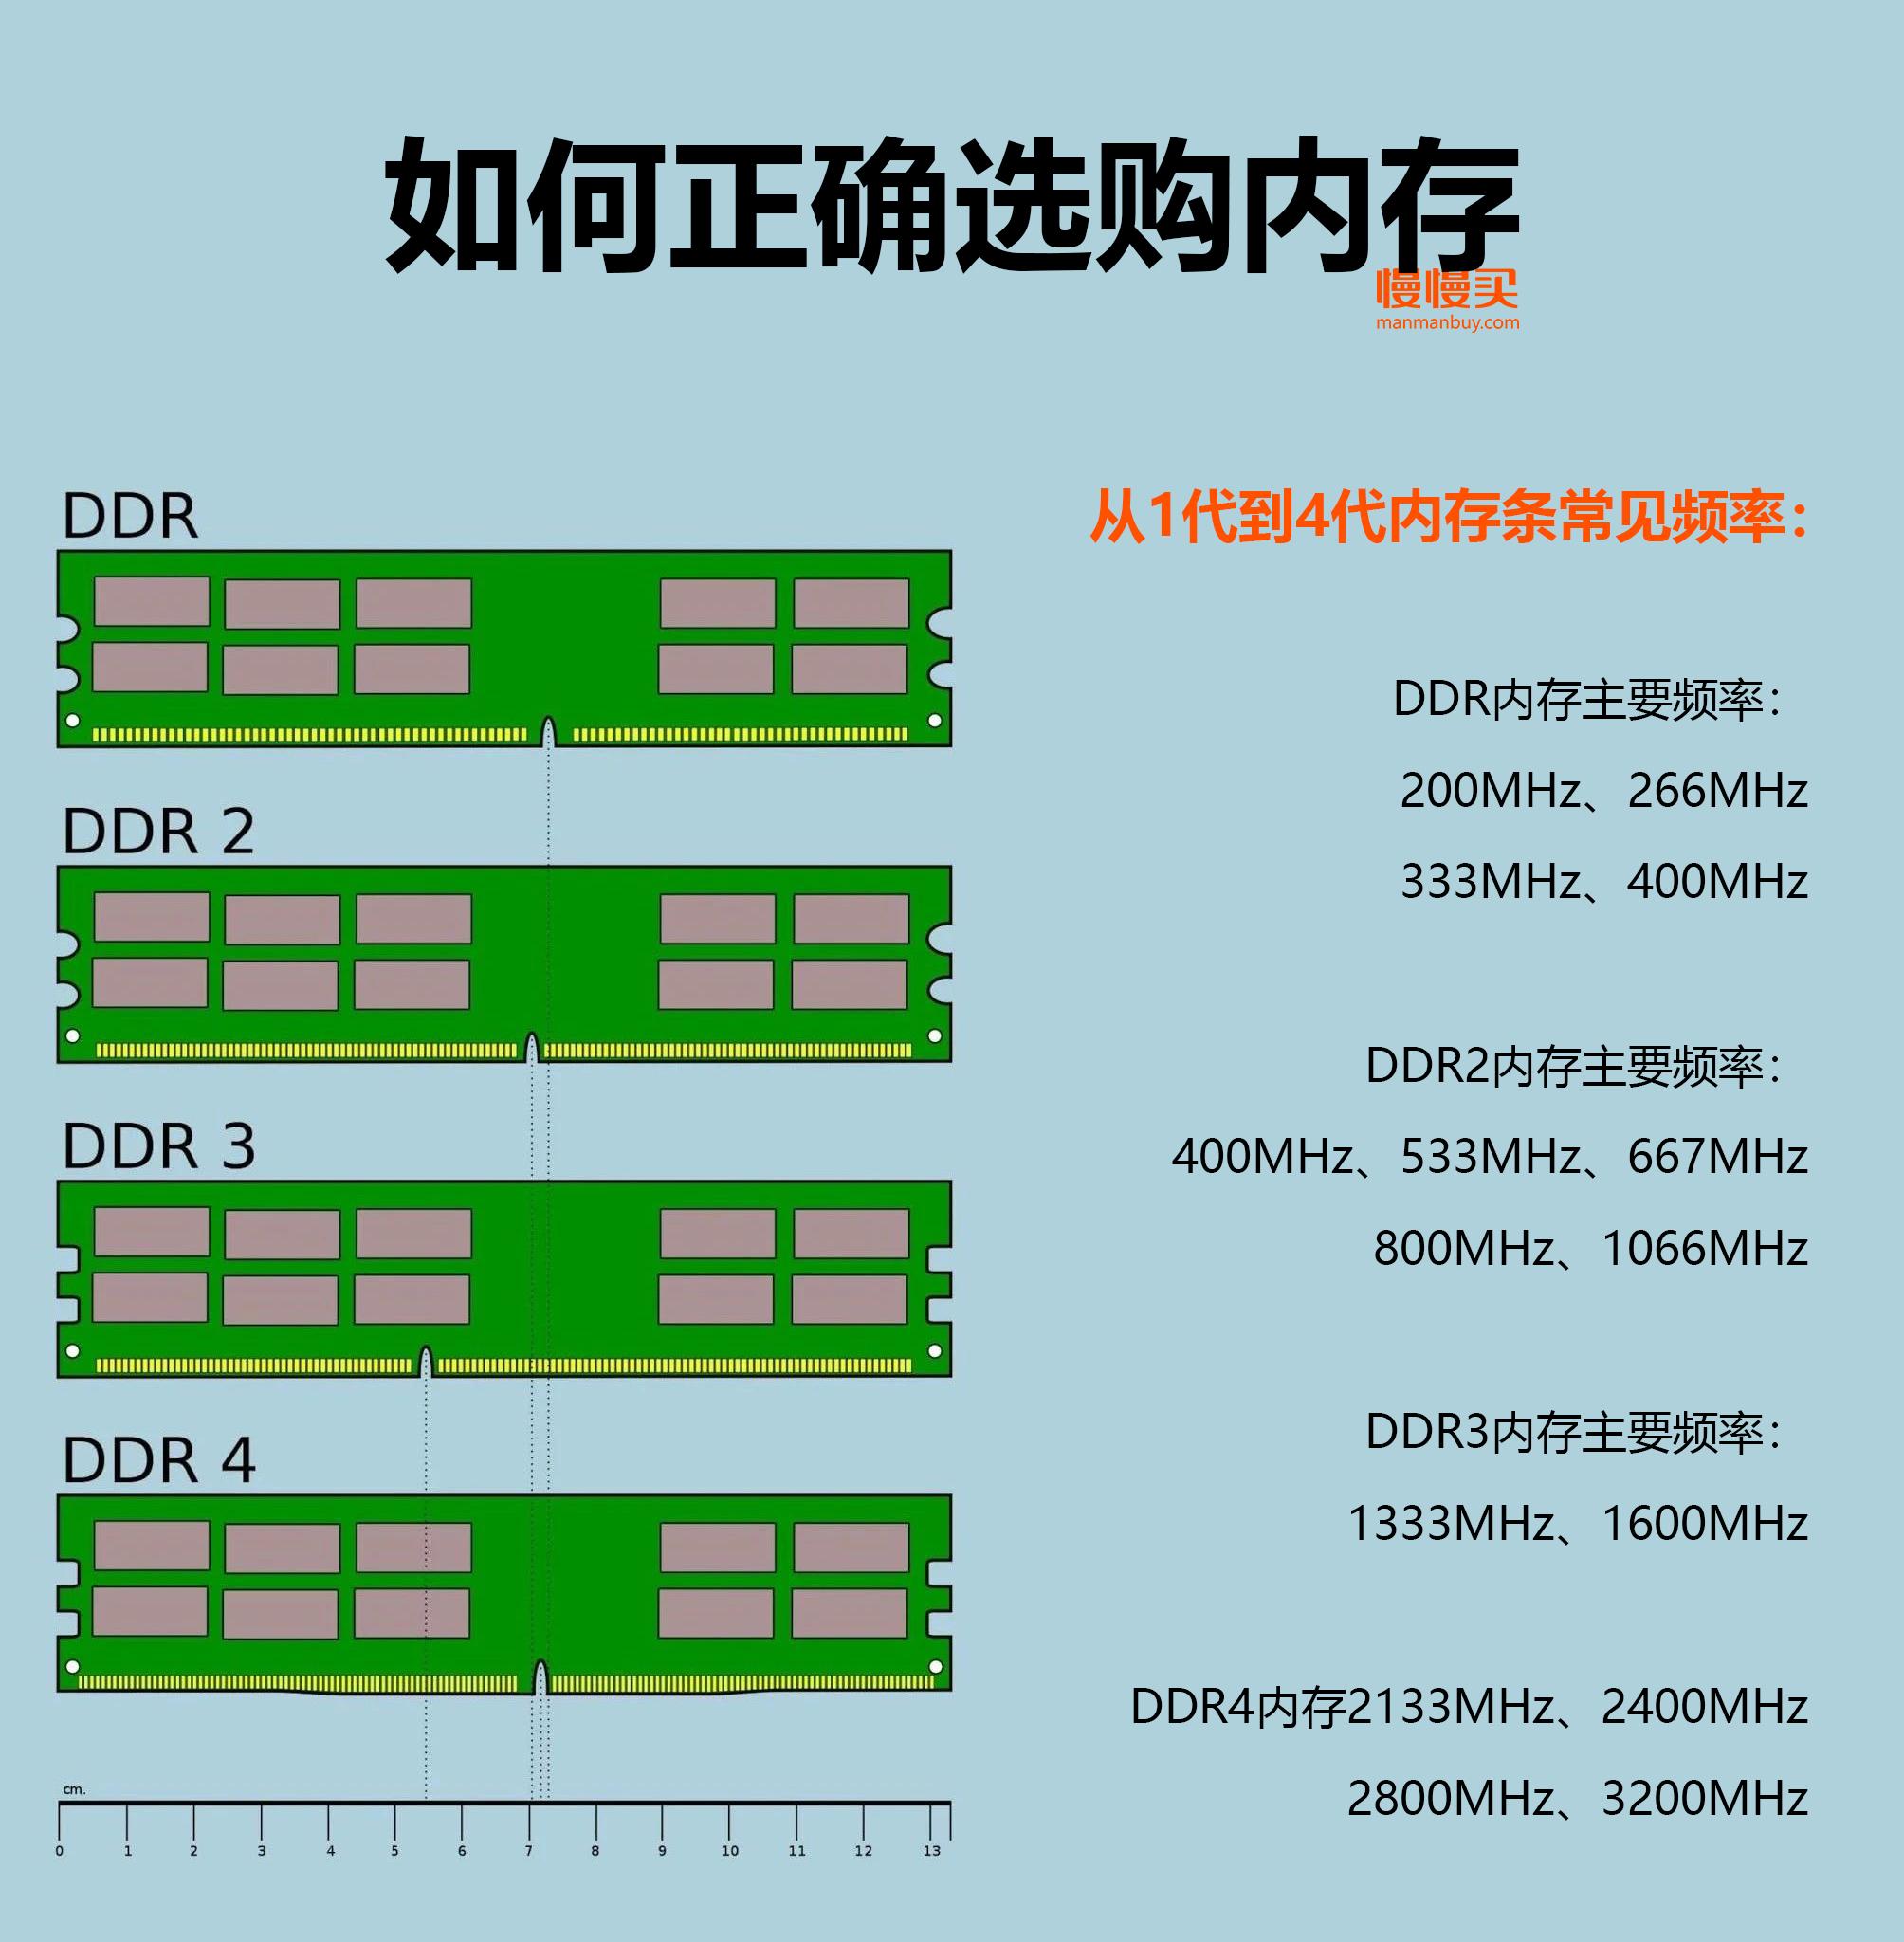 DDR4内存选购全攻略：性能对比、价格分析一网打尽  第1张